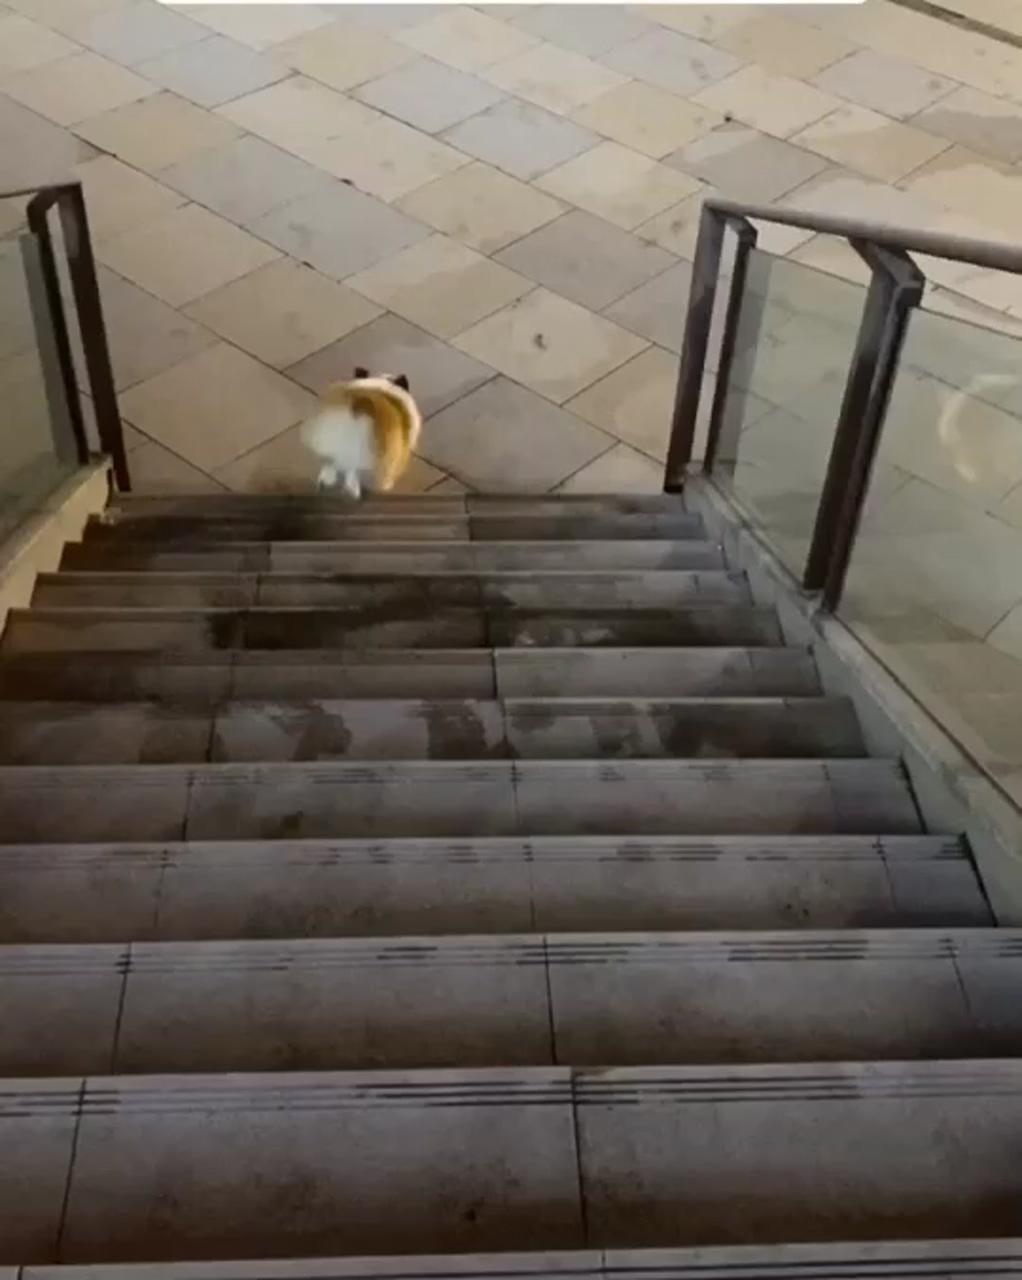 How a thick corgi go down stairs; cute corgi puppy